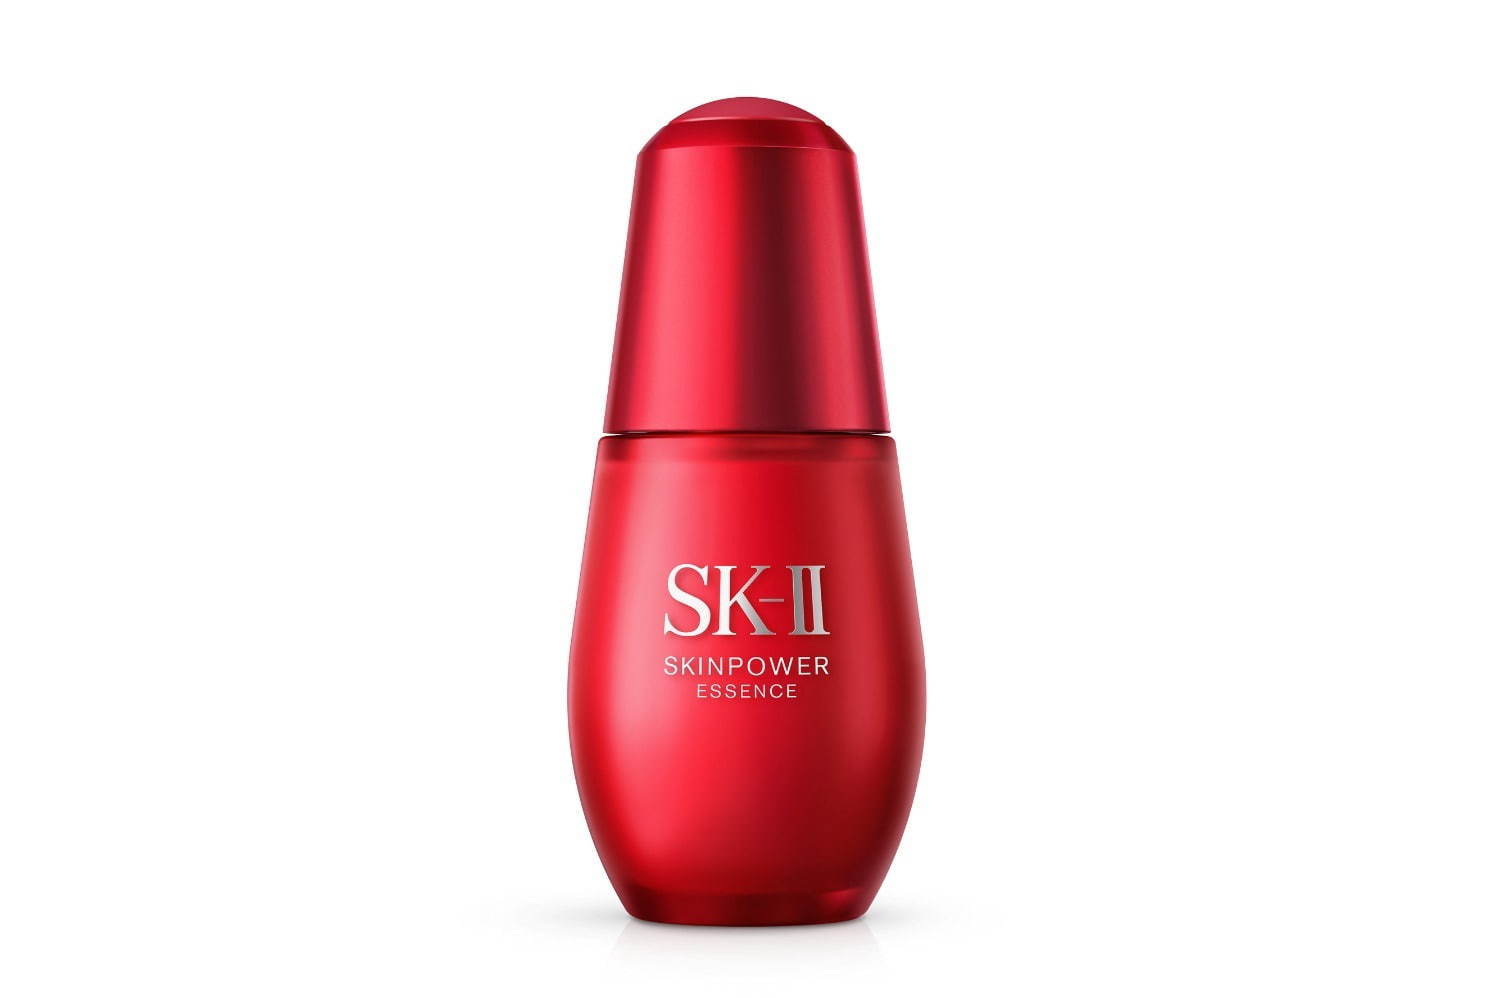 SK-IIスキンケア シリーズ「スキンパワー」誕生、新美容液やクリームで弾むような“うるツヤ肌”へ - ファッションプレス